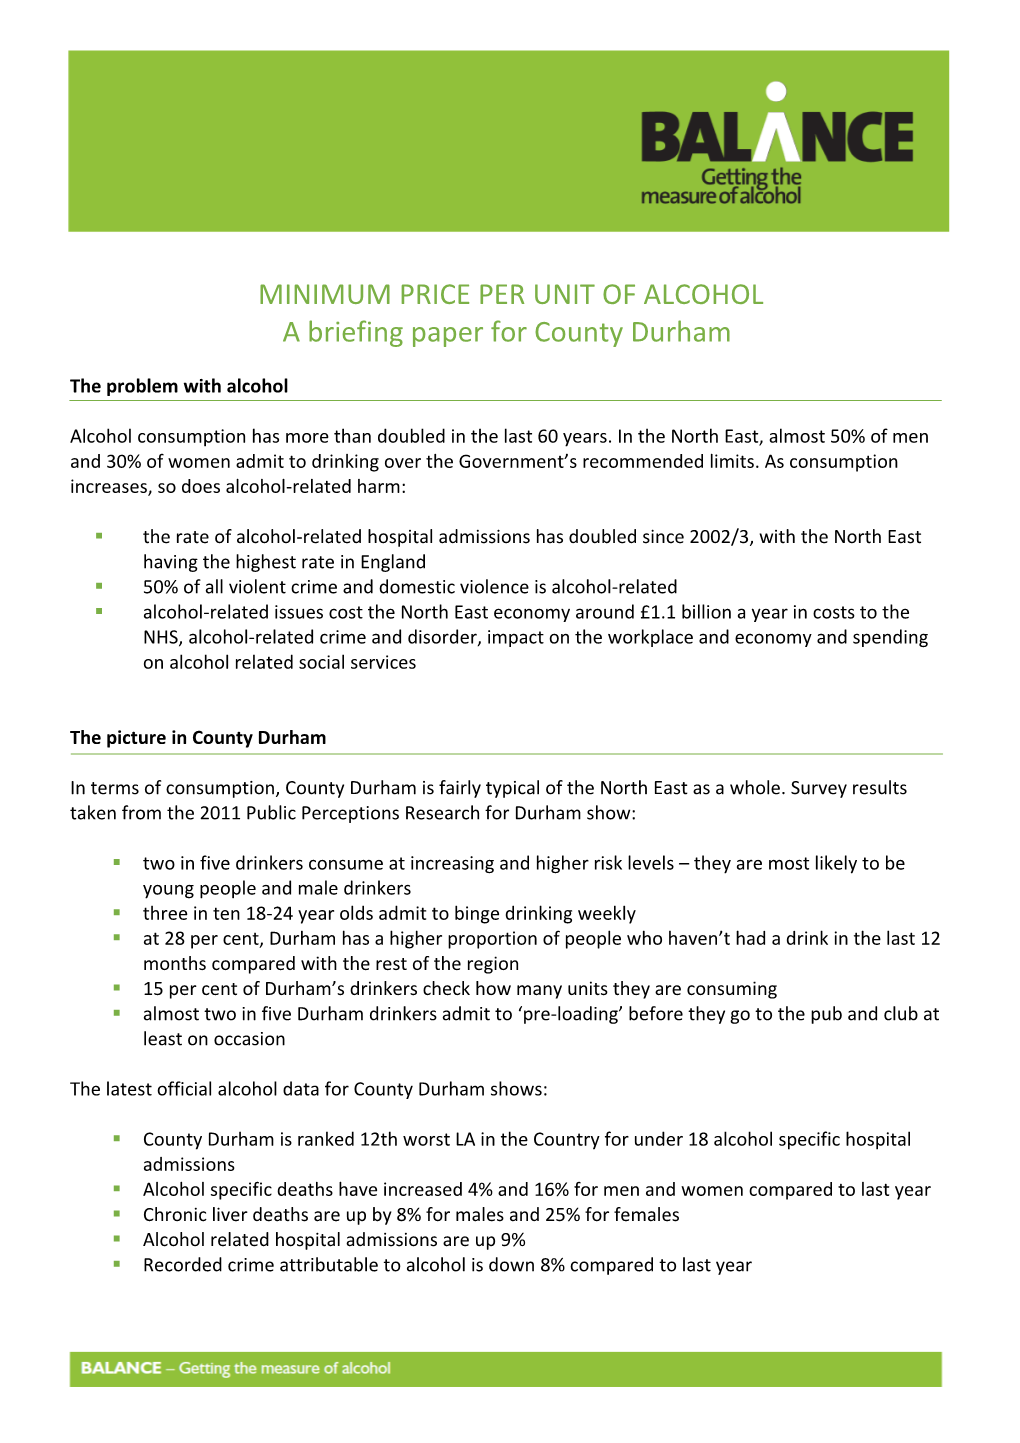 Minimum Price Per Unit of Alcohol s1